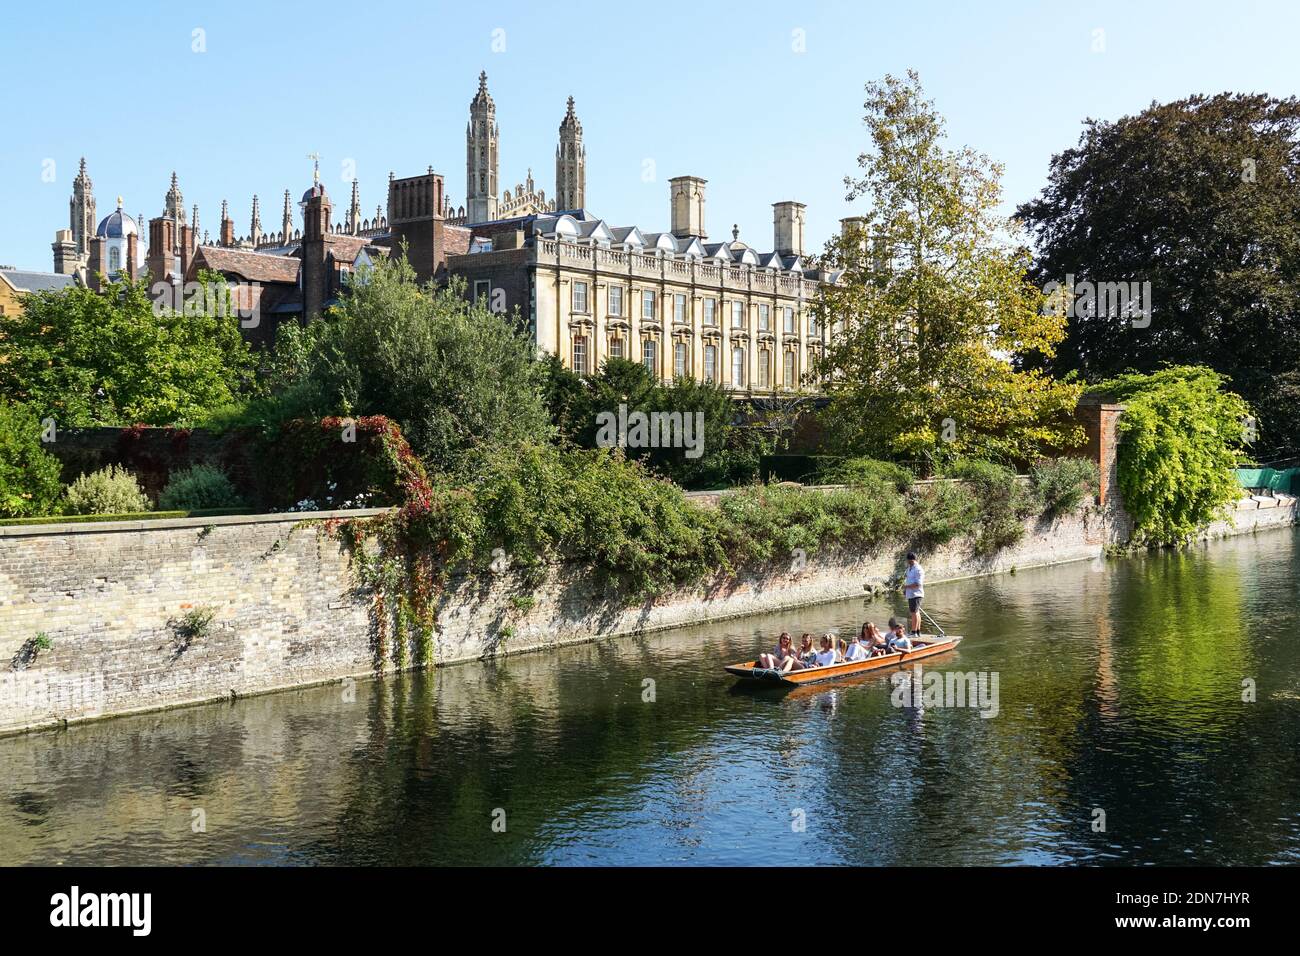 Des gens qui puntent sur la rivière Cam à Cambridge avec Clare College bâtiment en arrière-plan, Cambridgeshire Angleterre Royaume-Uni Banque D'Images